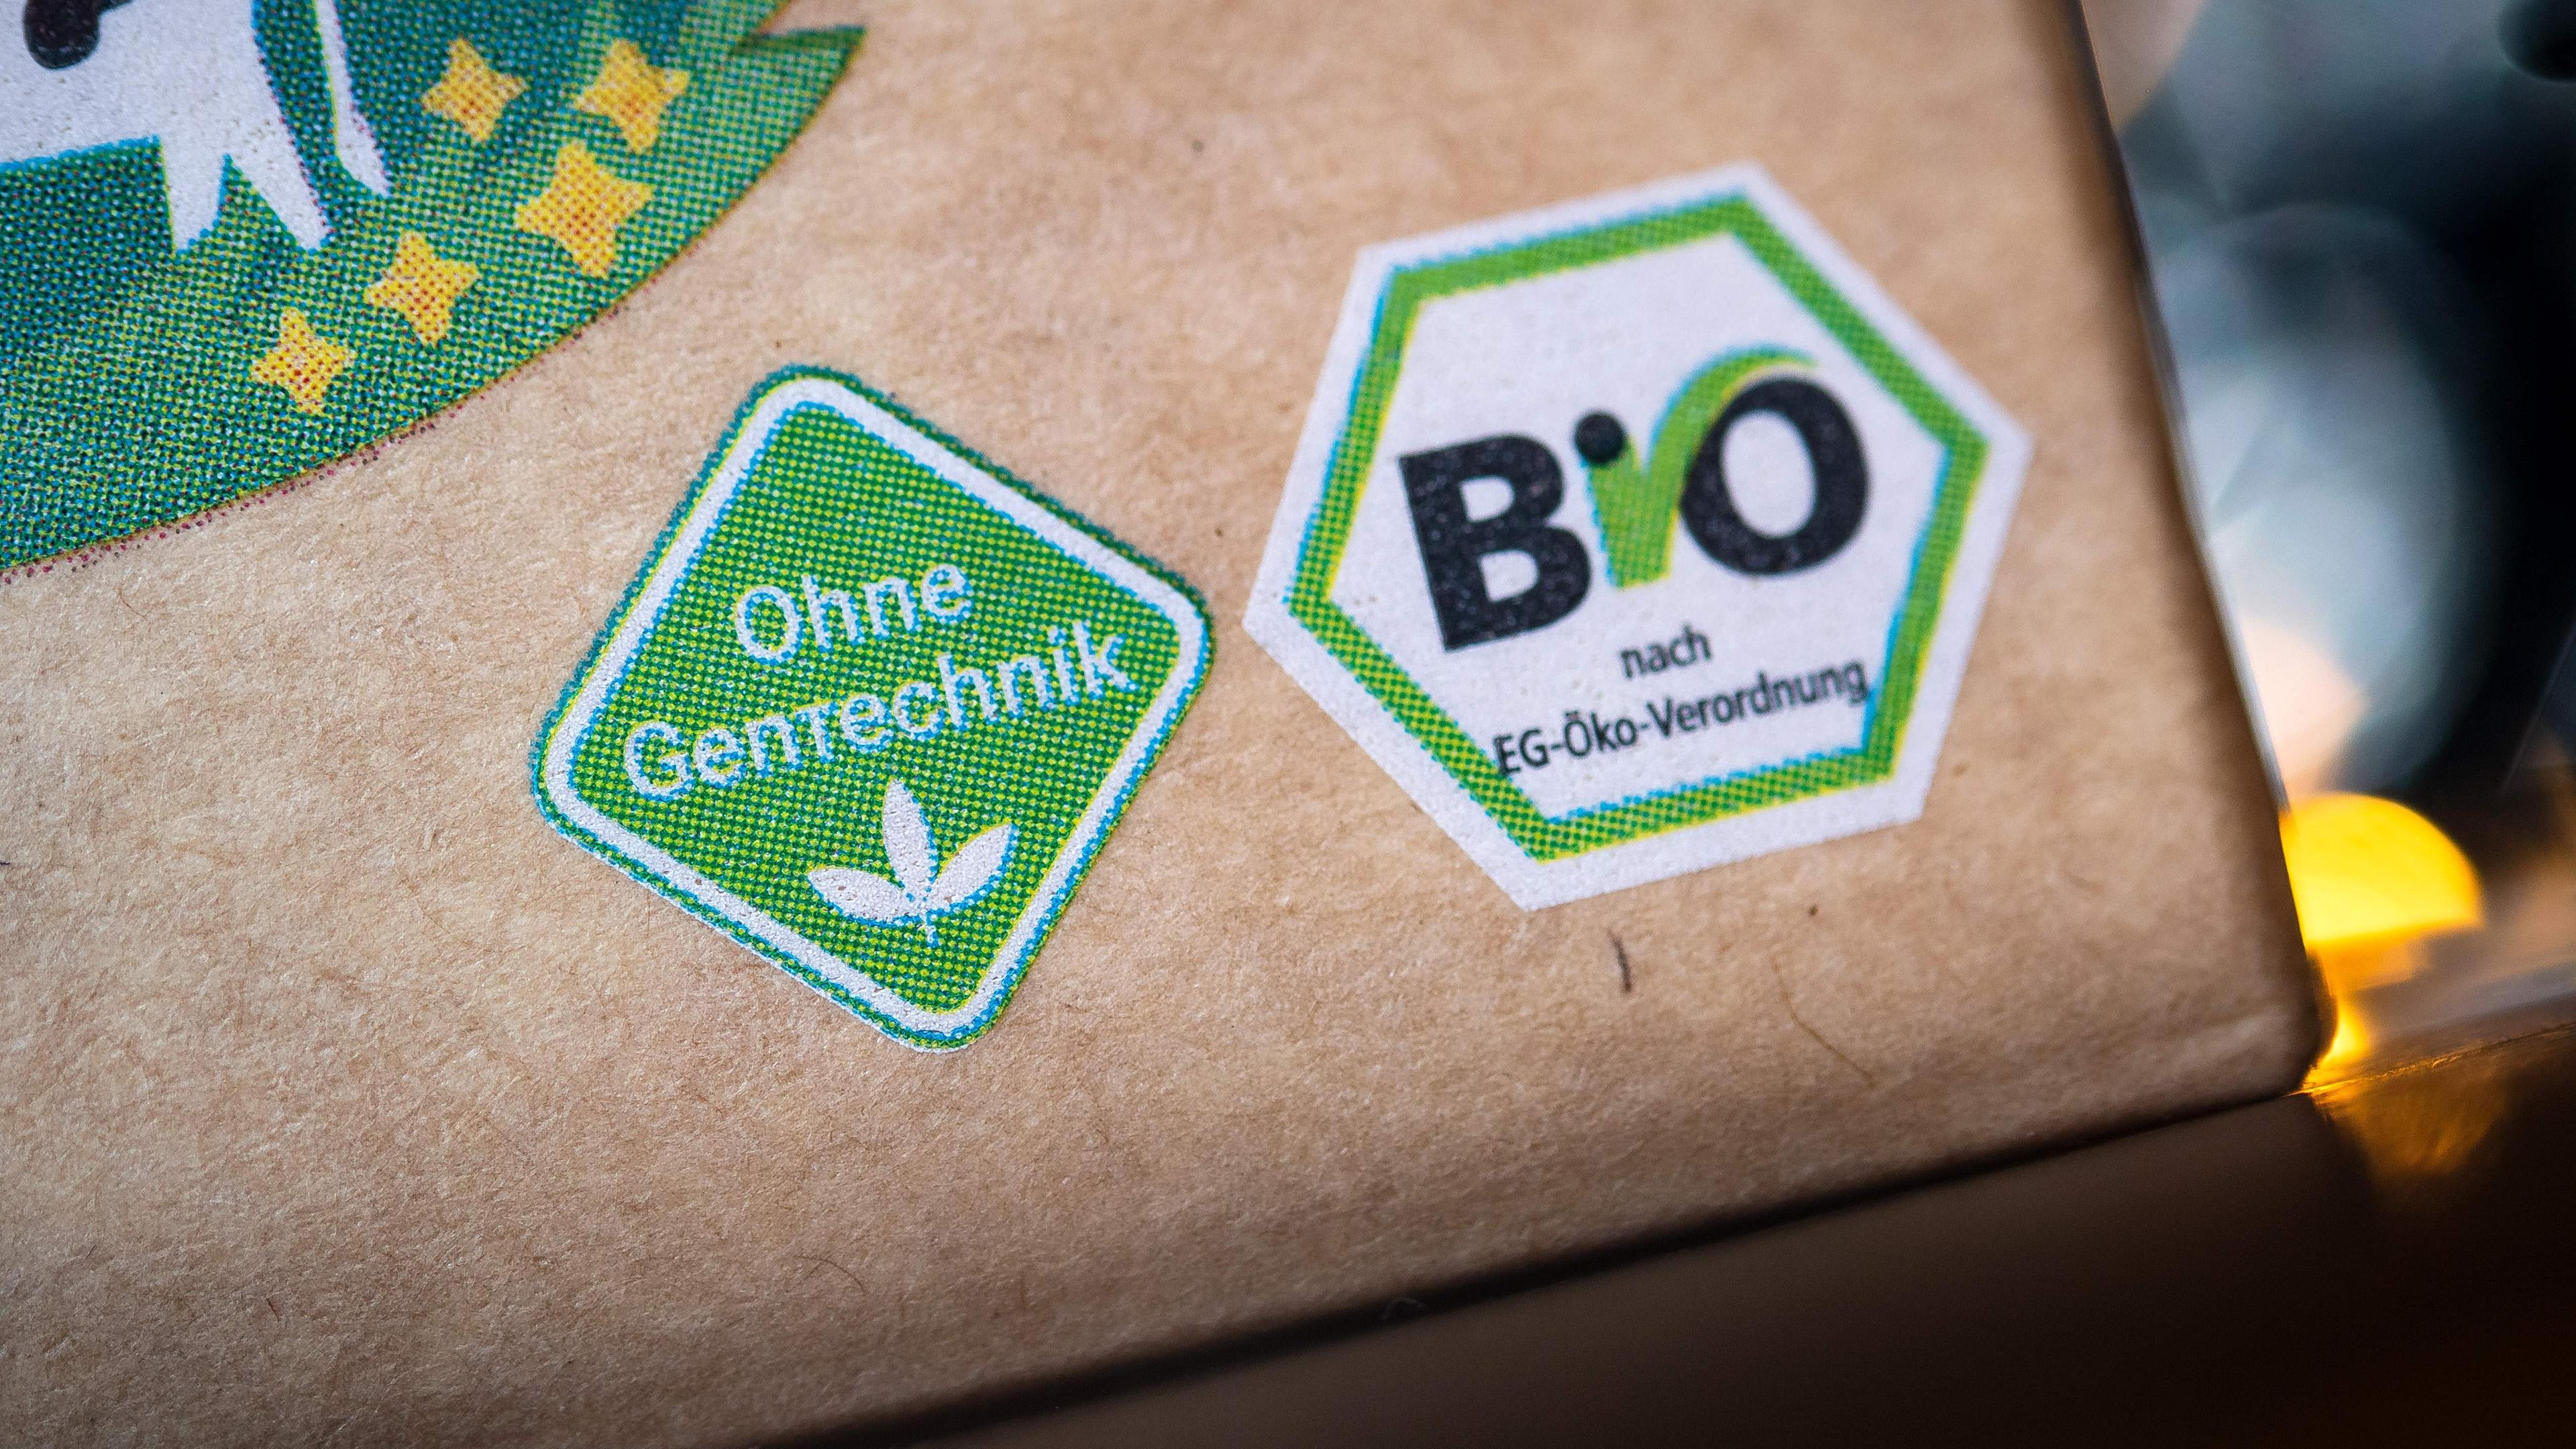 Das Logo "Ohne Gentechnik" und das Bio-Siegel "Bio nach EU-Öko-Verordnung" sind auf einer Lebensmittelverpackung zu sehen.